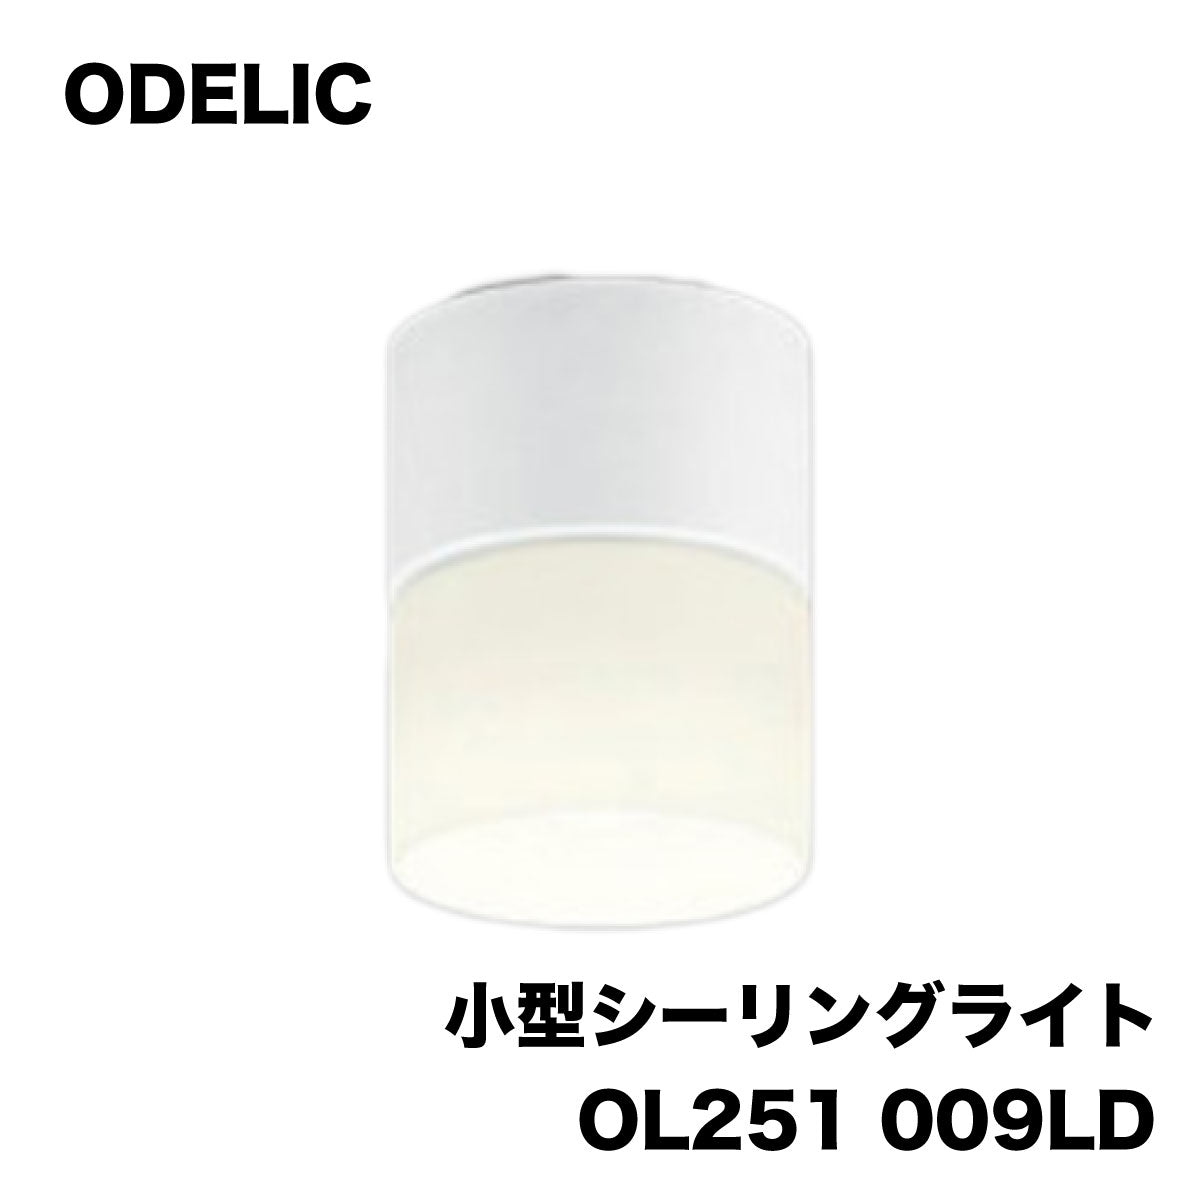 売上激安未使用品 ODELIC オーデリック LEDシーリングダウンライト エクステリアライト OG254528 計7個セット 屋外用ライト